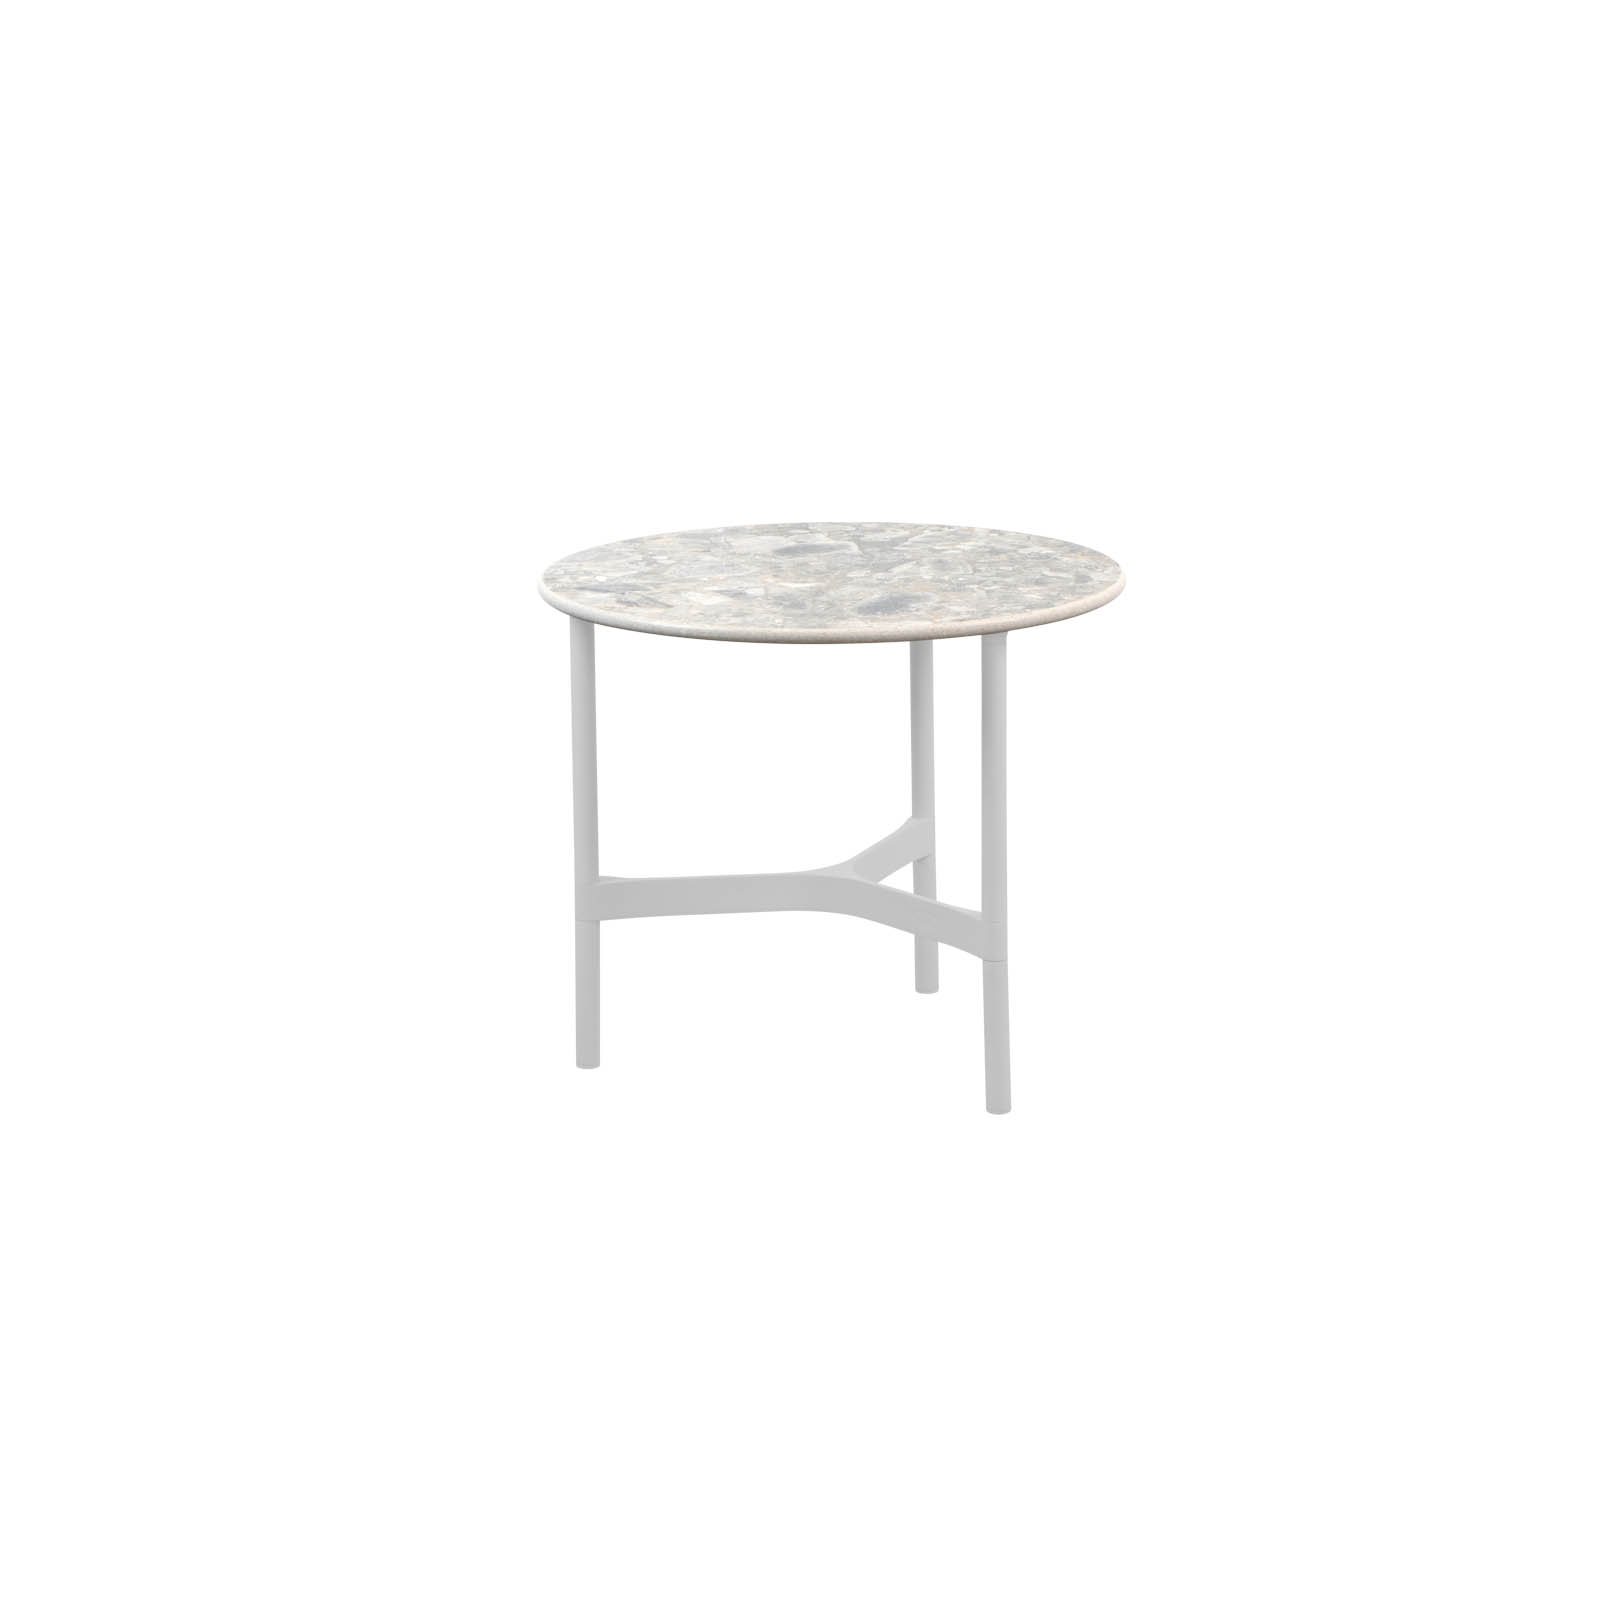 Couchtisch klein Twist aus Aluminium in White mit Tischplatte aus Ceramic in Multi Colour